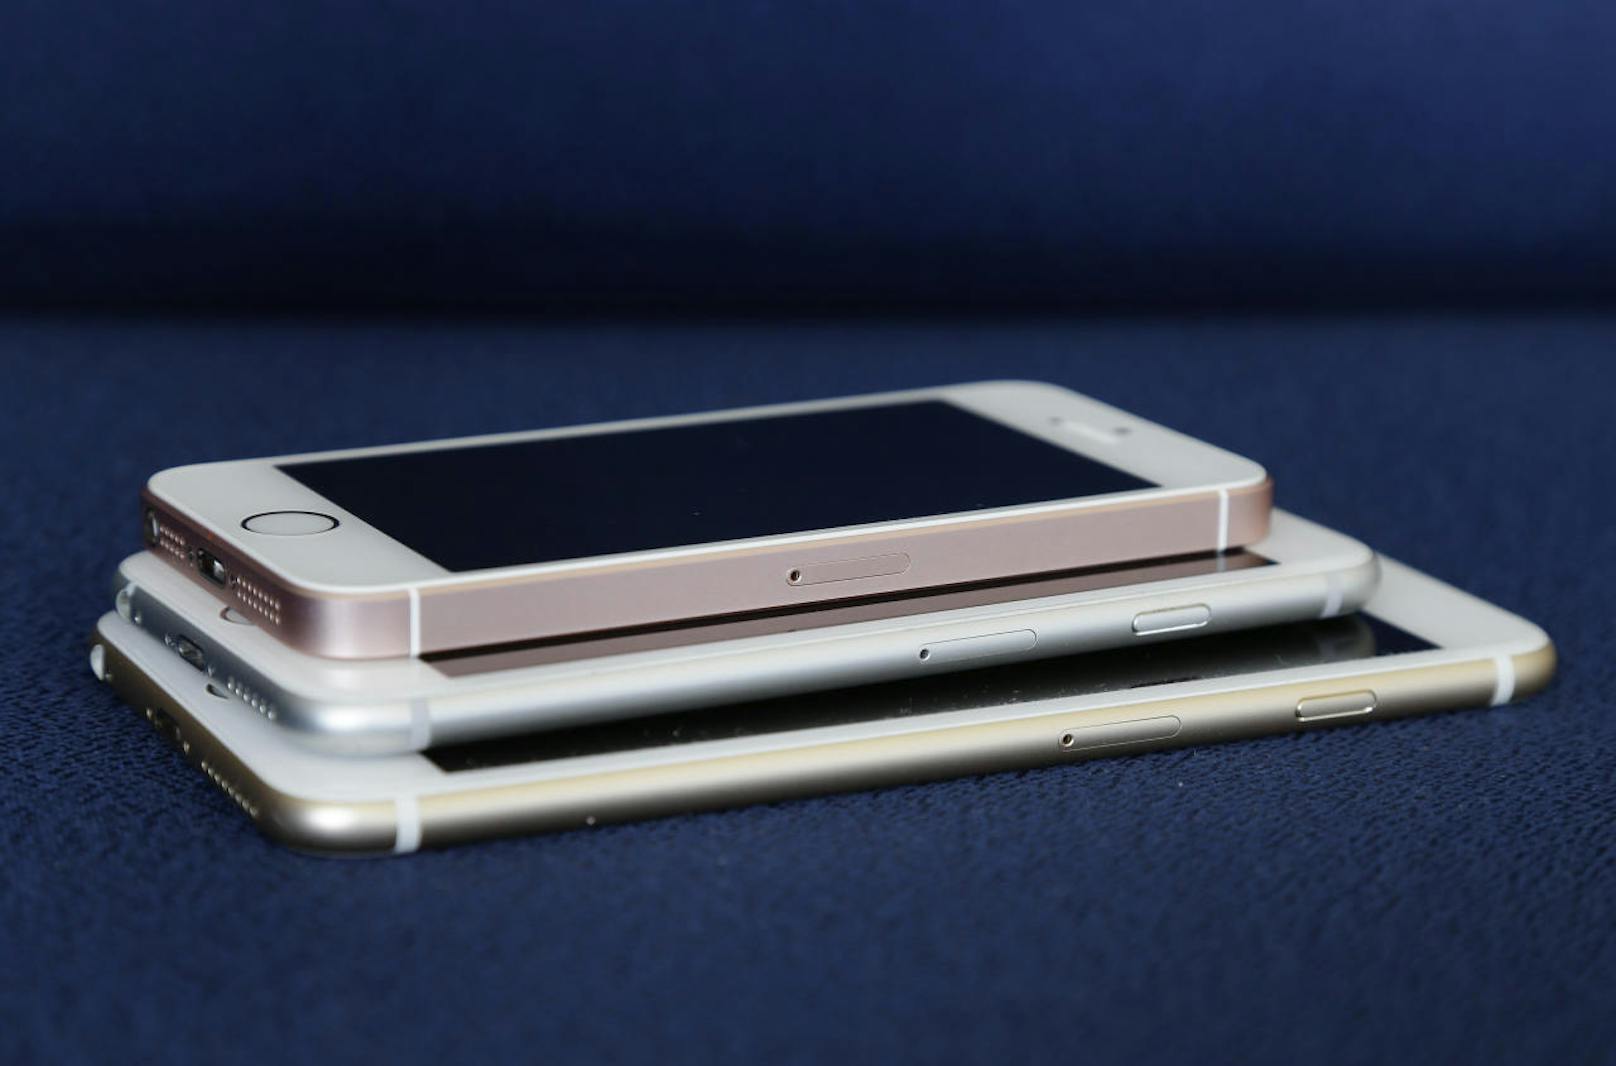 Viele Quellen bezeichnen das kommende iPhone als SE 2. Laut der Plattform "Macotakara.jp" soll das neue Einsteigergerät aber iPhone 9 heißen. Grund dafür sei, dass das Telefon in einem ähnlichen Design wie das iPhone 8 daherkommen wird.